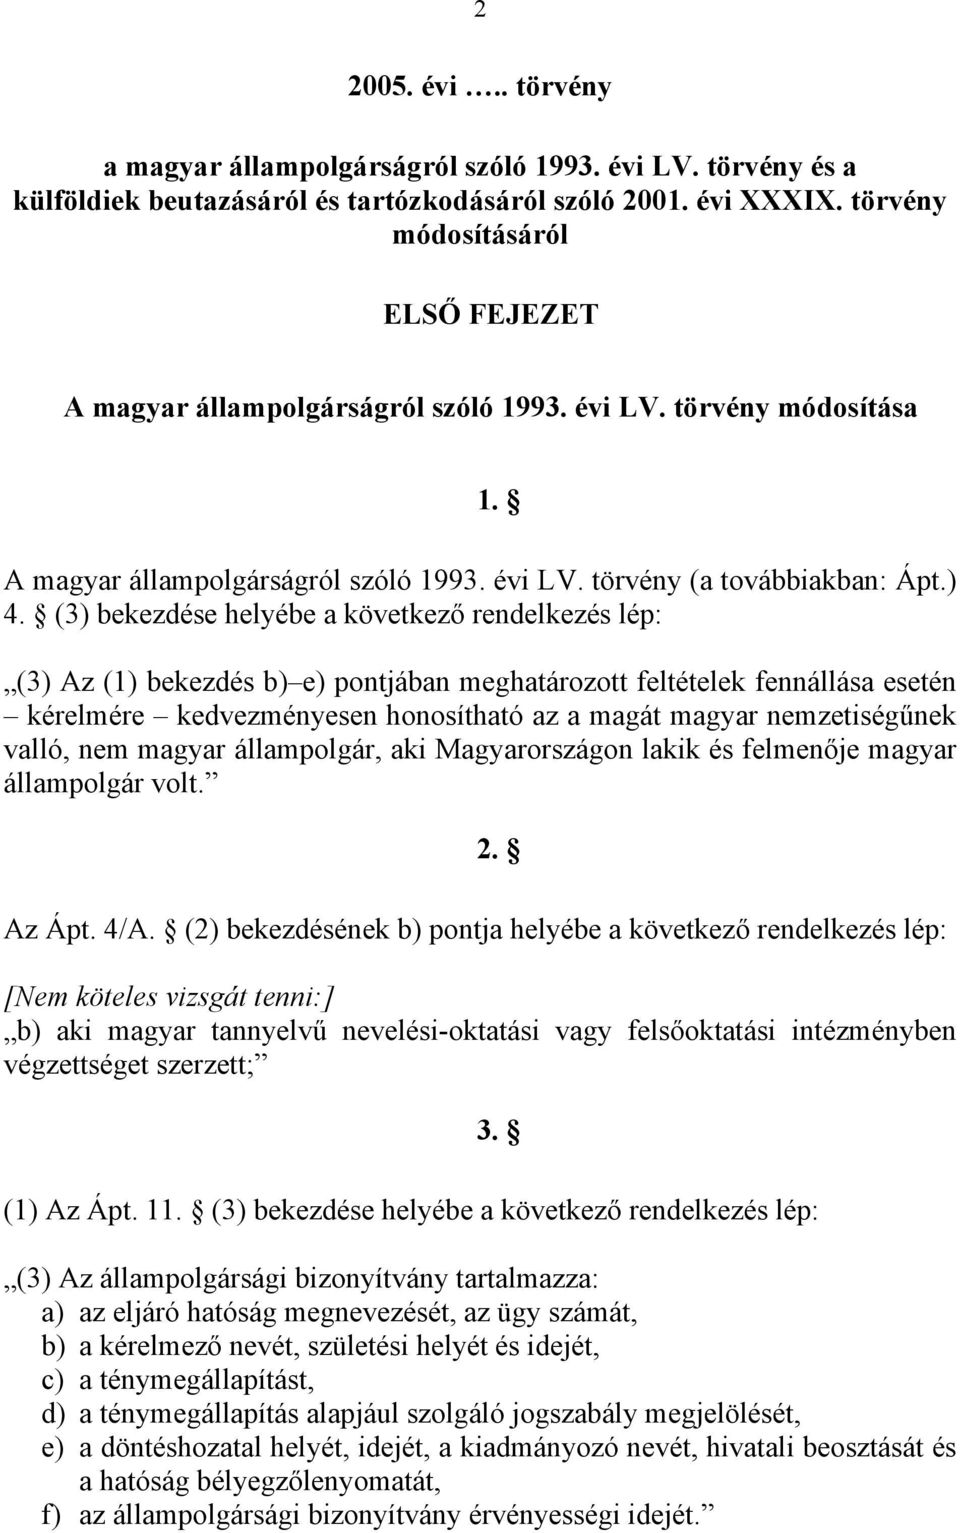 (3) bekezdése helyébe a következő rendelkezés lép: (3) Az (1) bekezdés b) e) pontjában meghatározott feltételek fennállása esetén kérelmére kedvezményesen honosítható az a magát magyar nemzetiségűnek